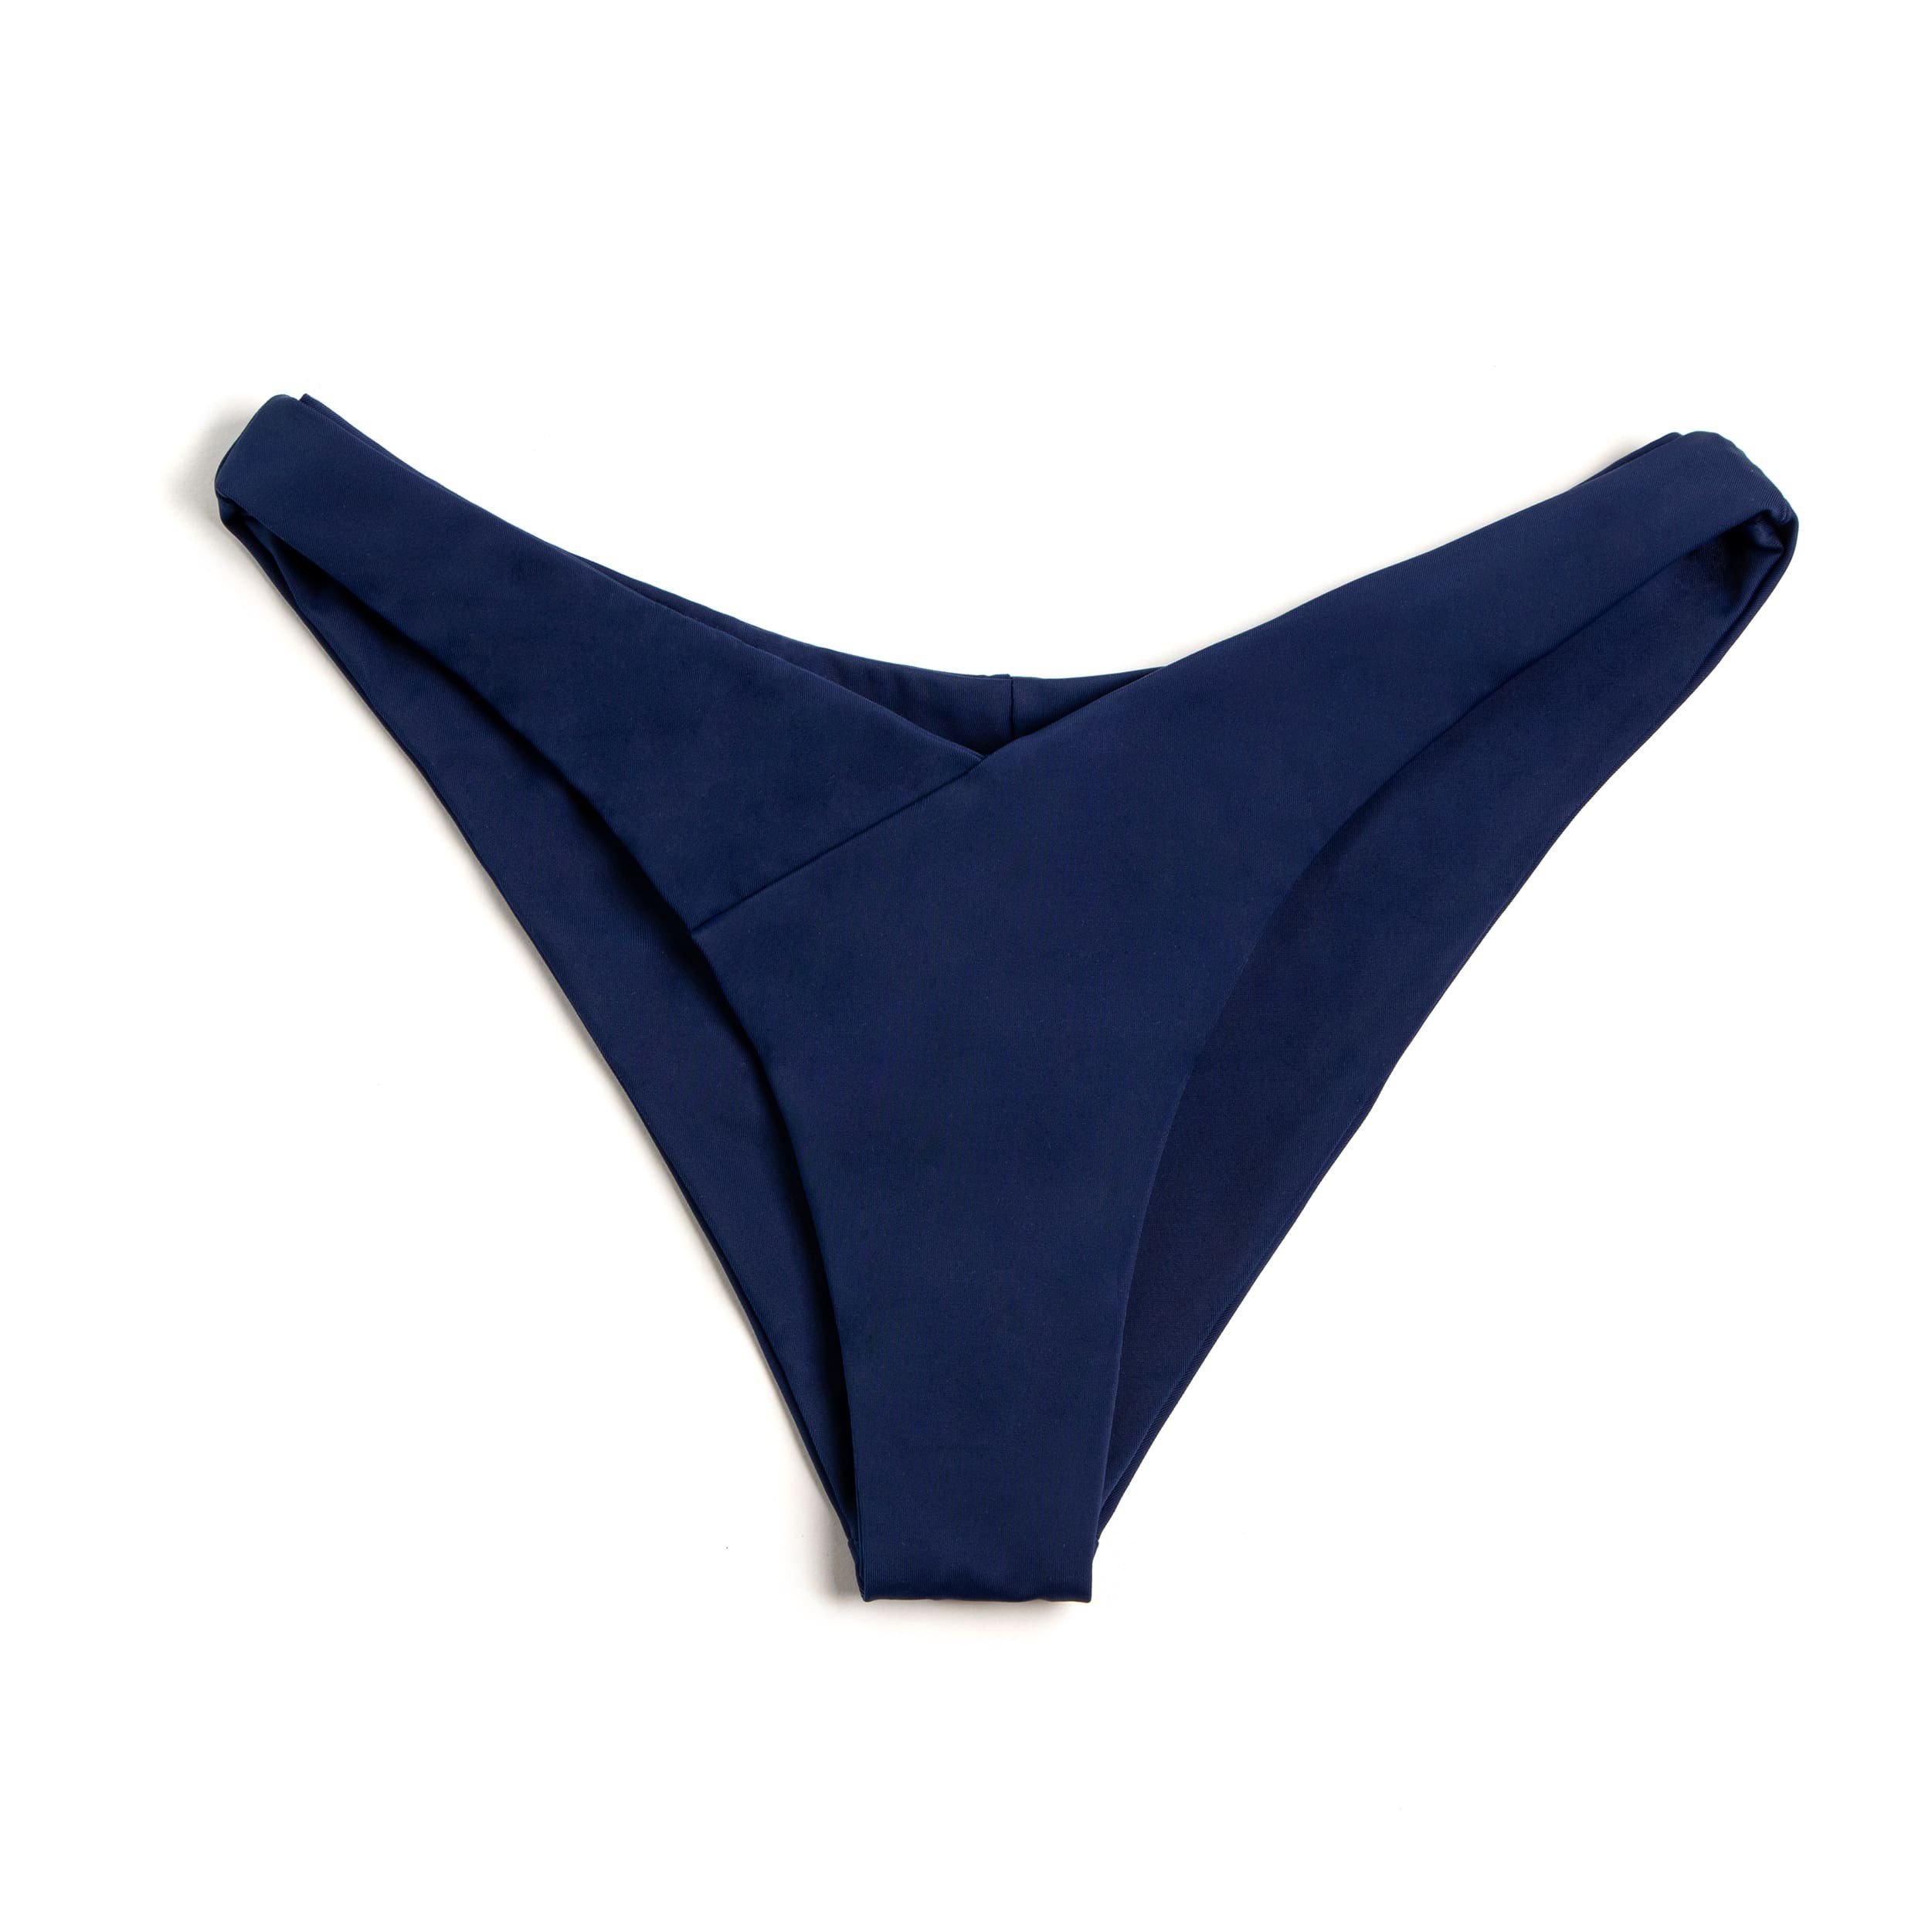 Thalassa Swimsuit 
Bottom